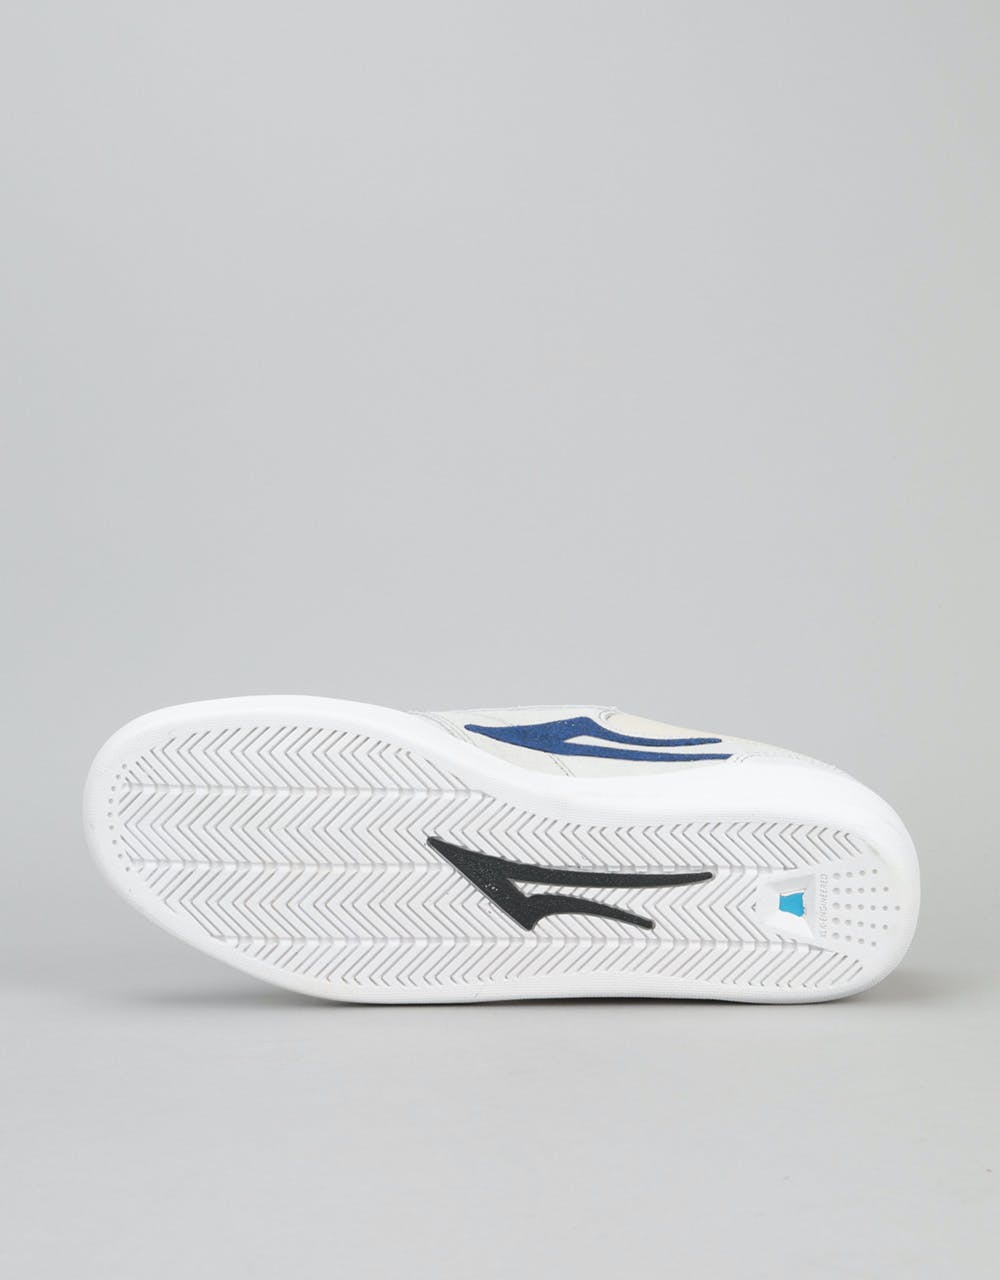 Lakai Griffin XLK Skate Shoes - White Suede